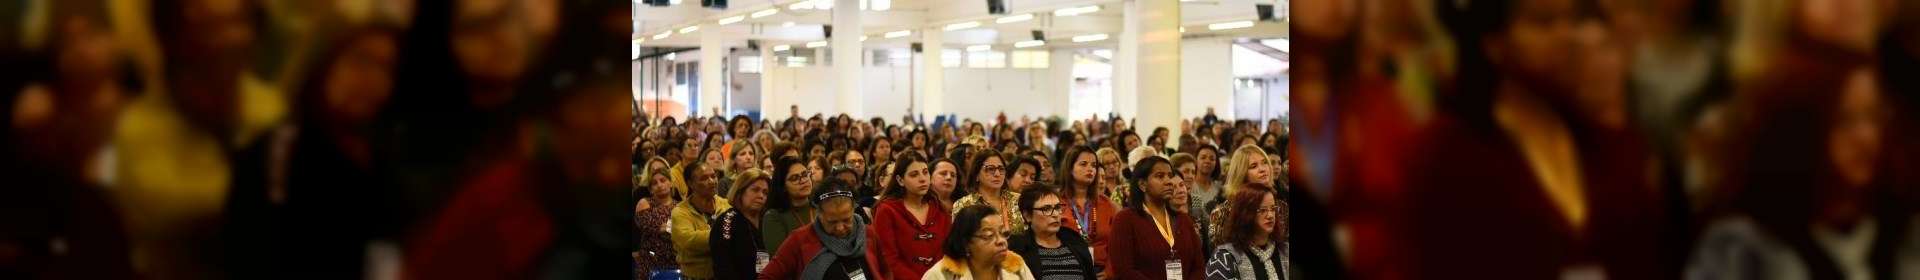 Seminário reúne senhoras da Igreja Cristã Maranata de Juiz de Fora, MG